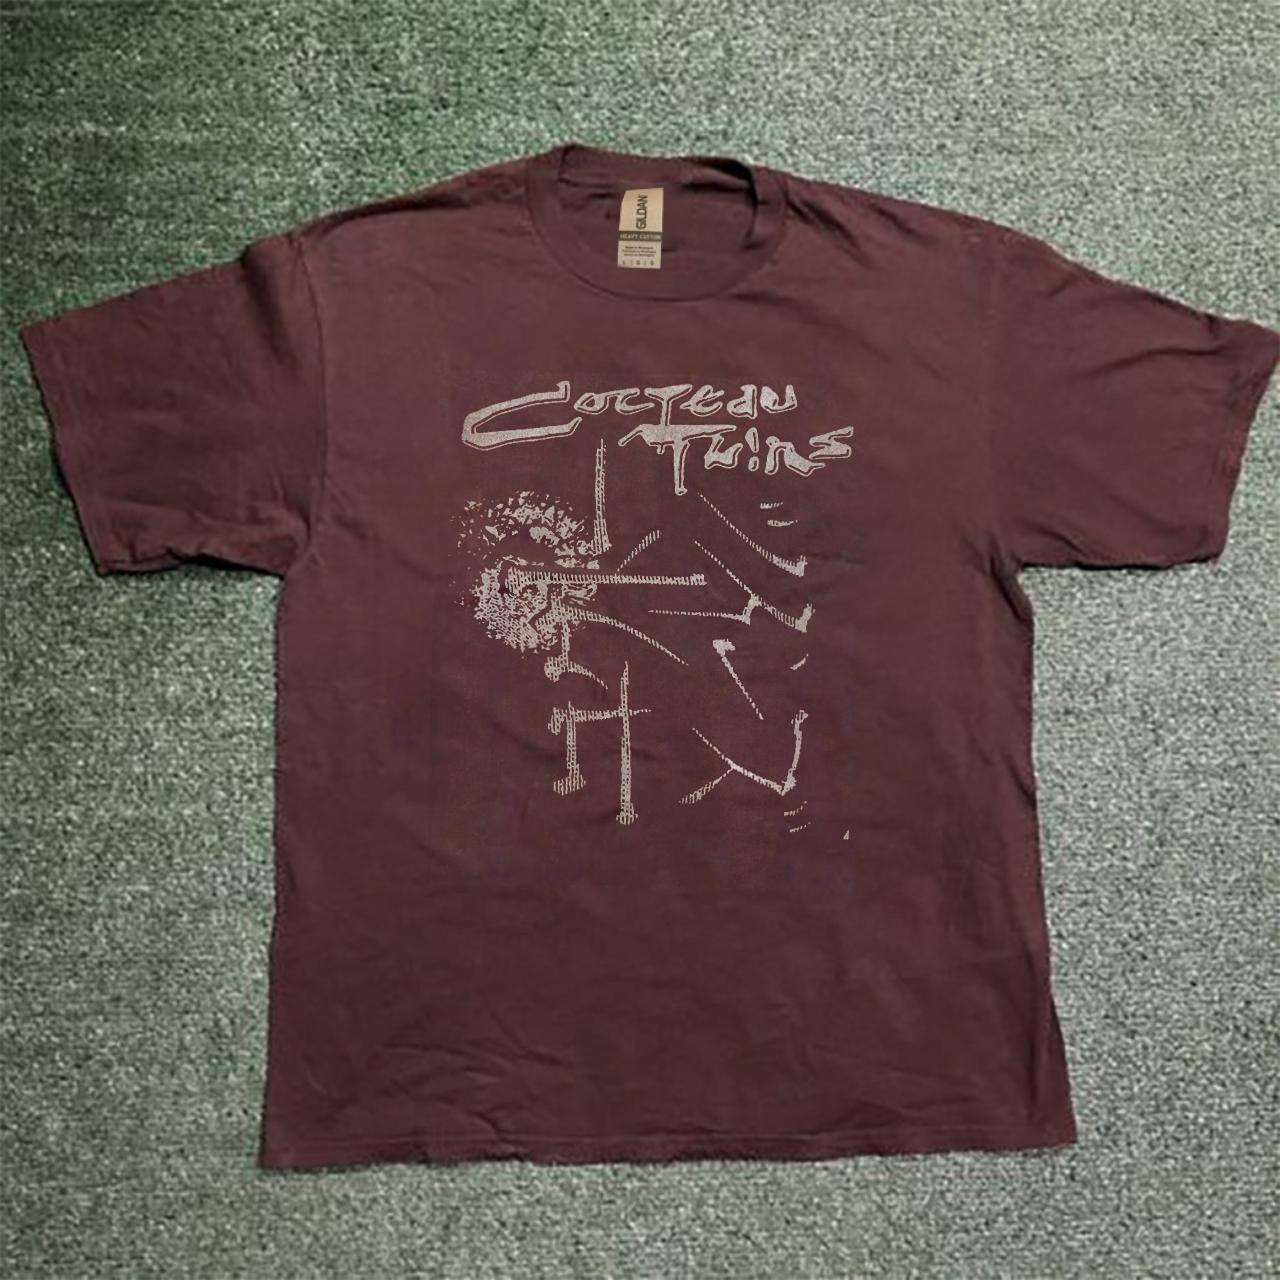 cocteau twins unisex T shirt T Shirt (U.S Size)... - Depop